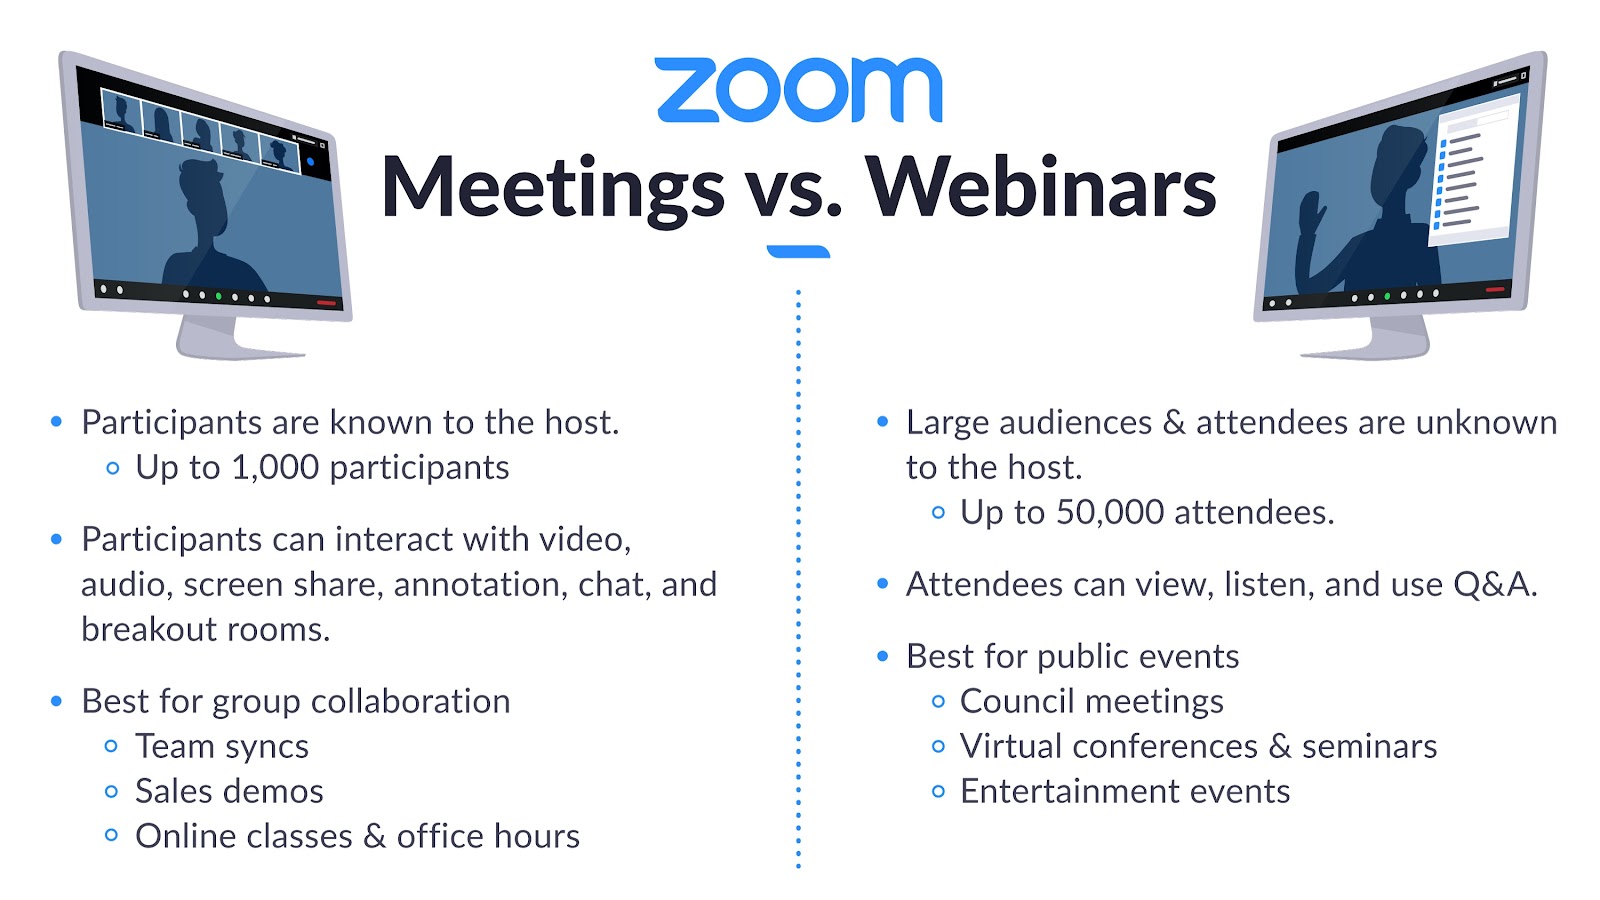 Zoom Meetings vs Webinar Stats from zoom.com